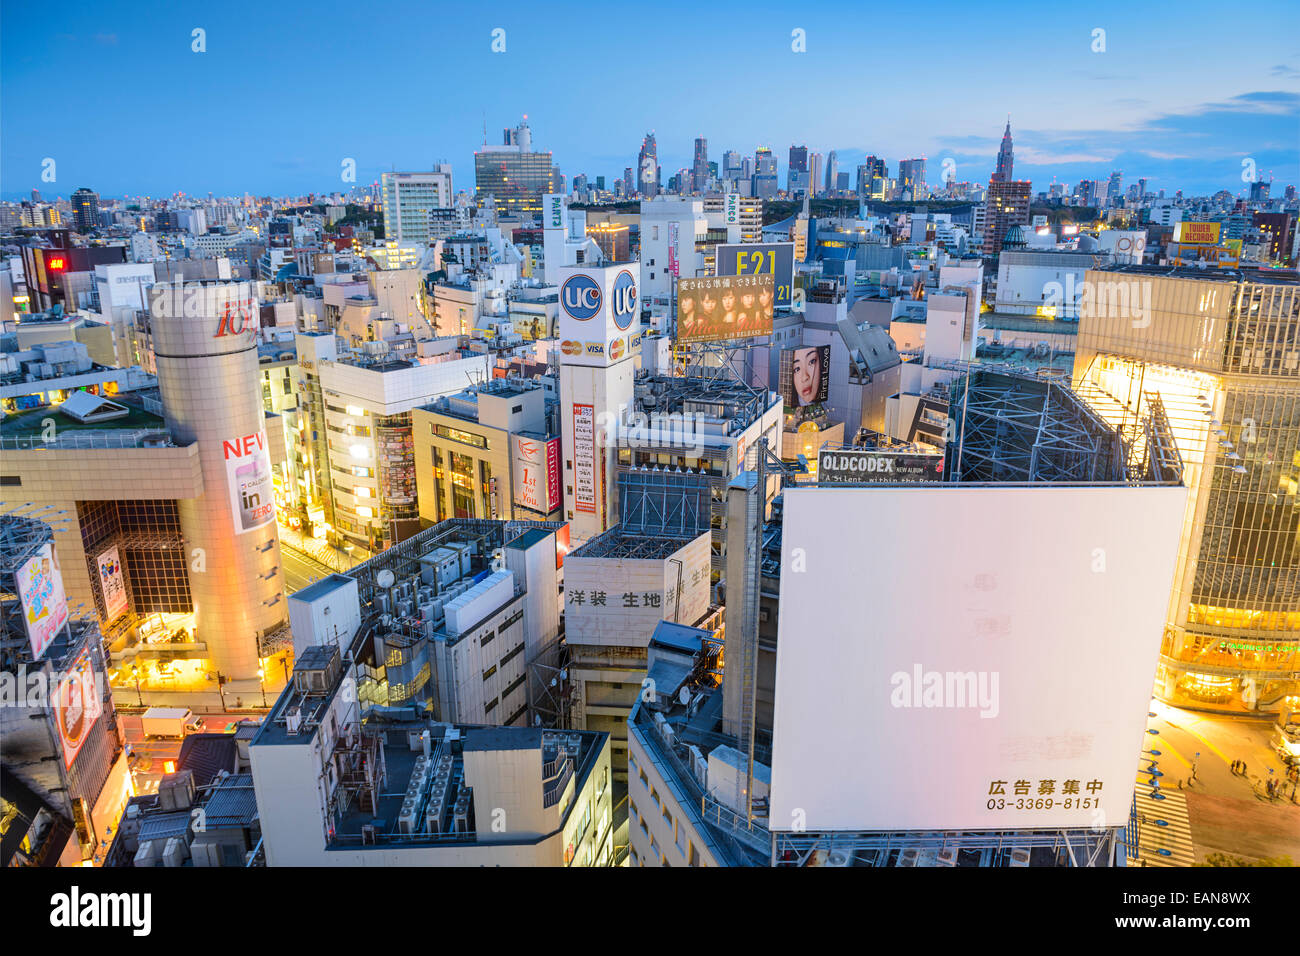 TOKYO, Giappone - 31 Marzo 2014: Cityscape vista sulla Shibuya. Shibuya è un rinomato centro di moda e la zona dei locali notturni. Foto Stock